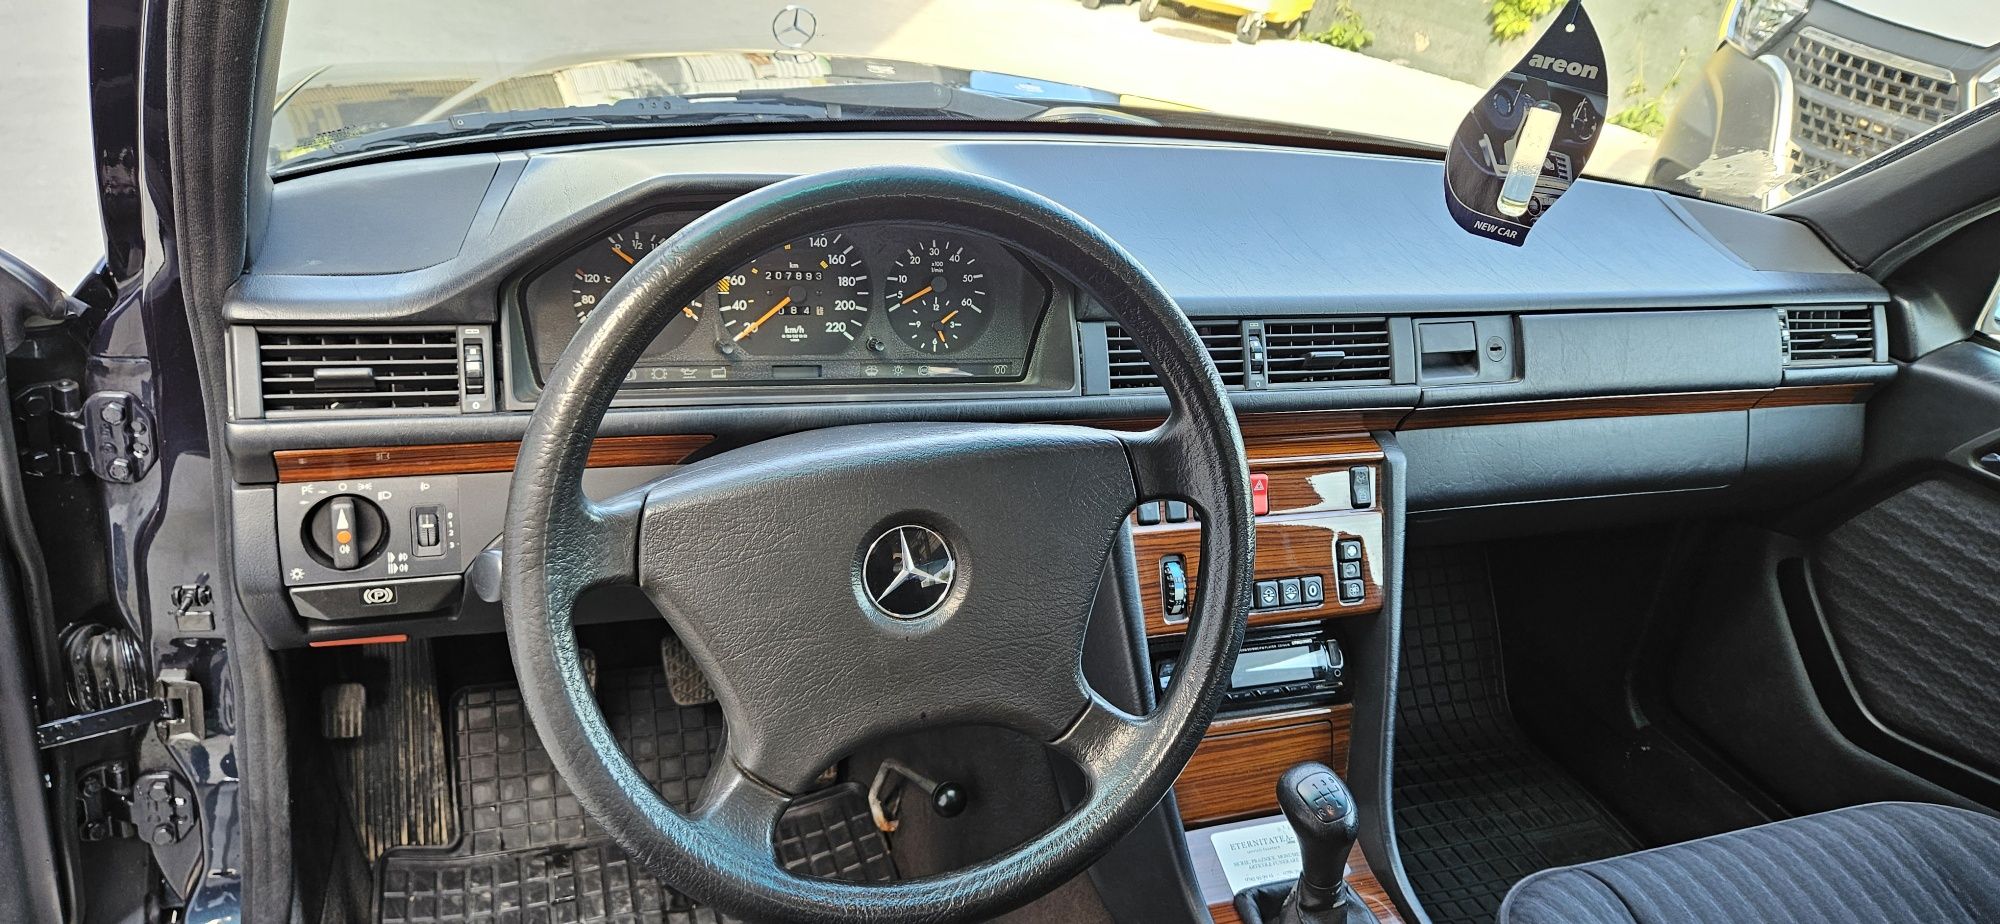 Dric Mercedes-Benz w124 autofunerara